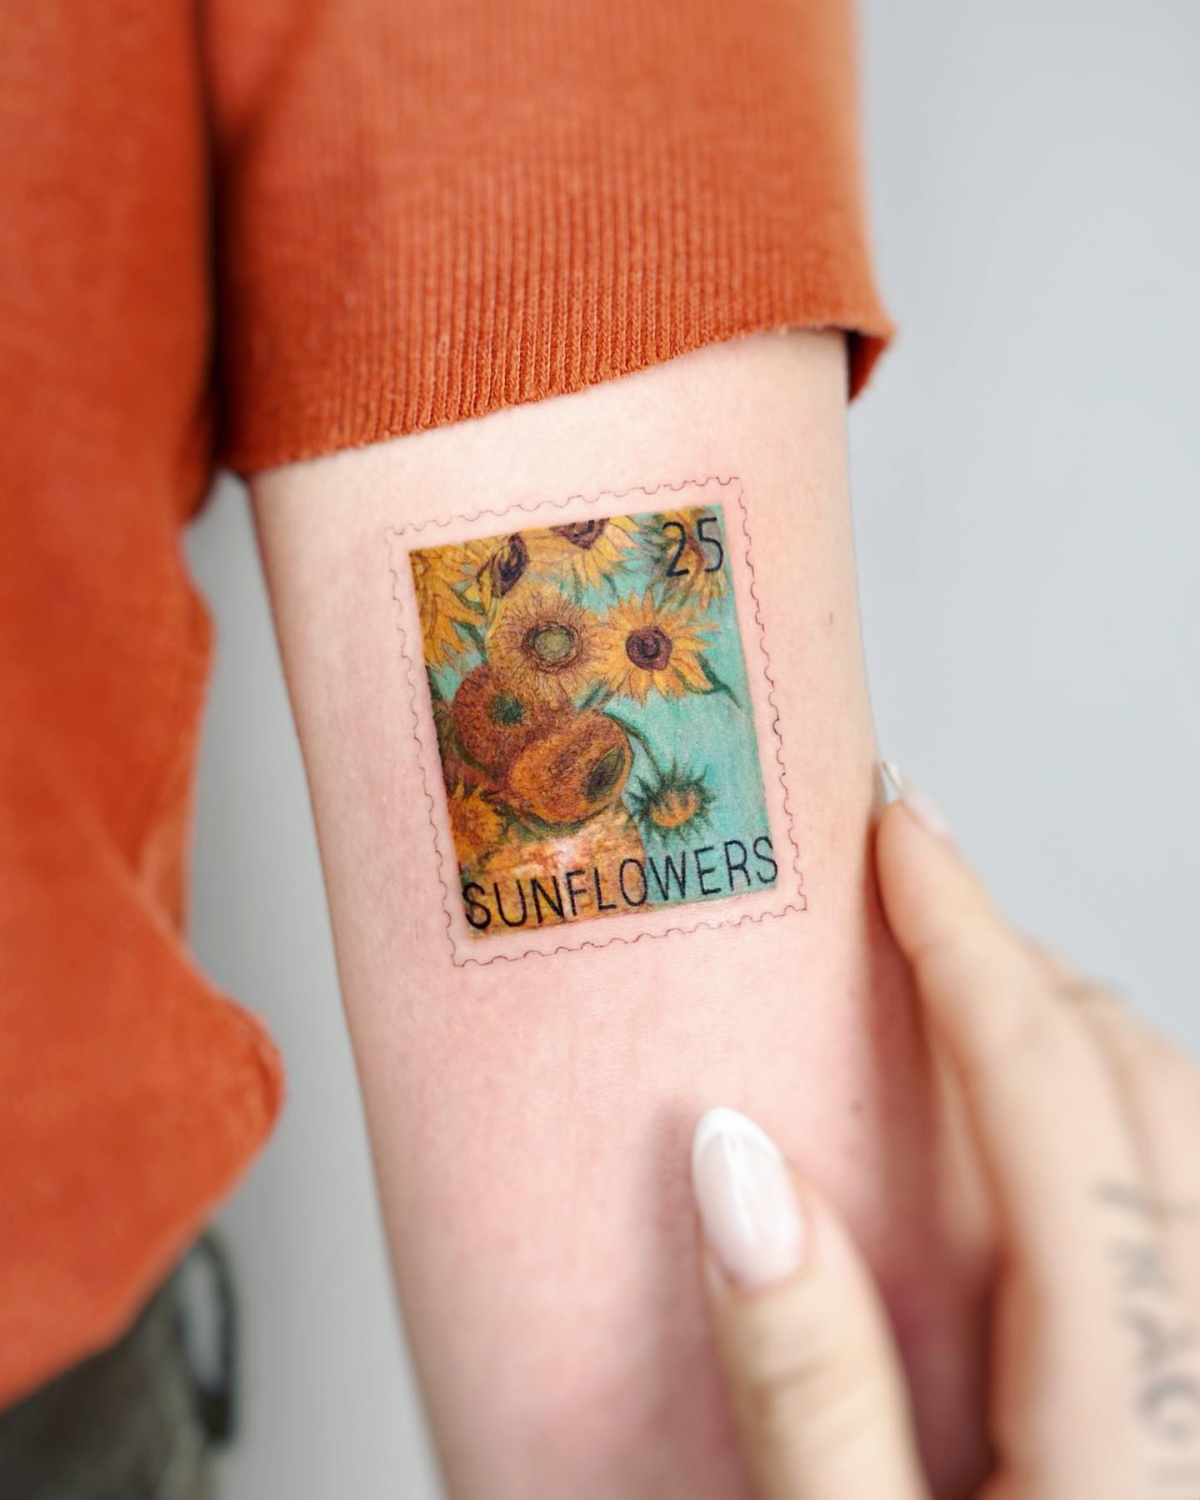 microrealism van gogh tattoo sunflowers